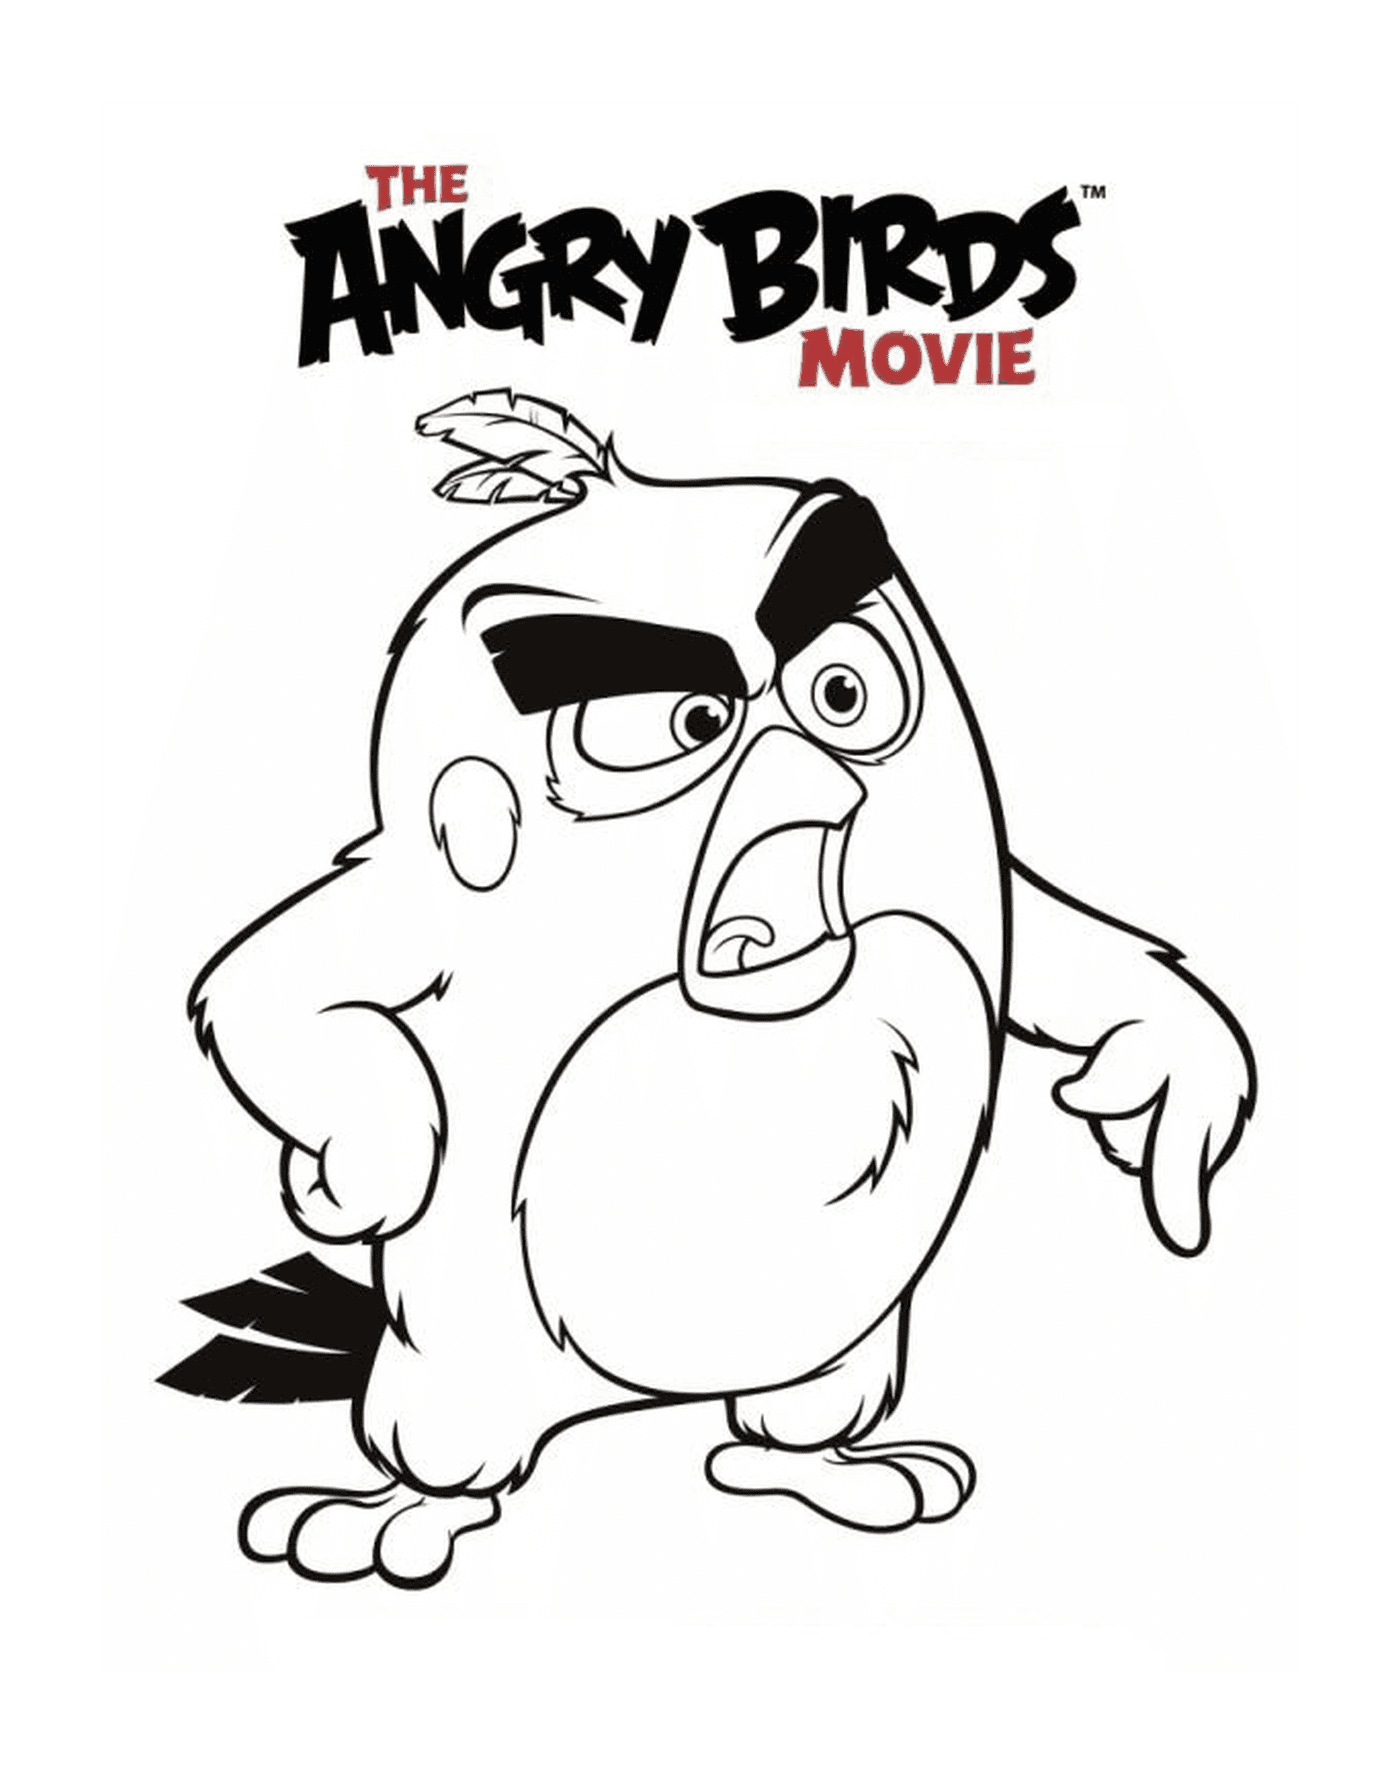  Гневные птицы фильма - красная злость 